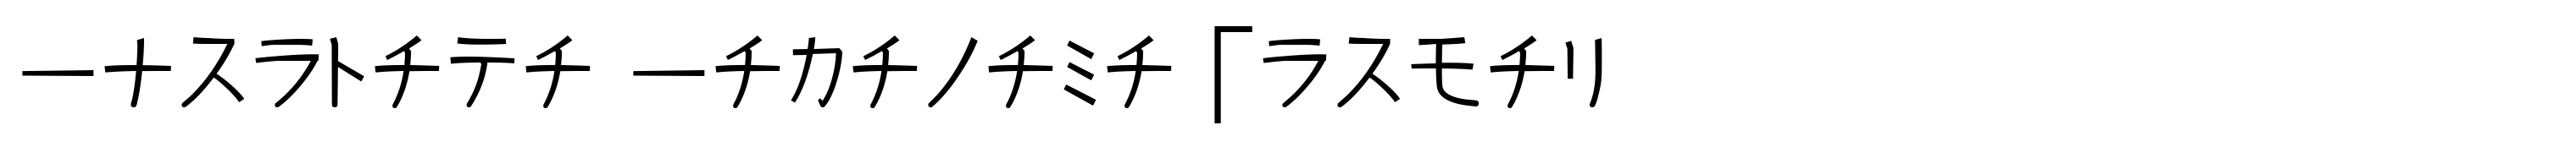 Kurosawa Katakana Normal